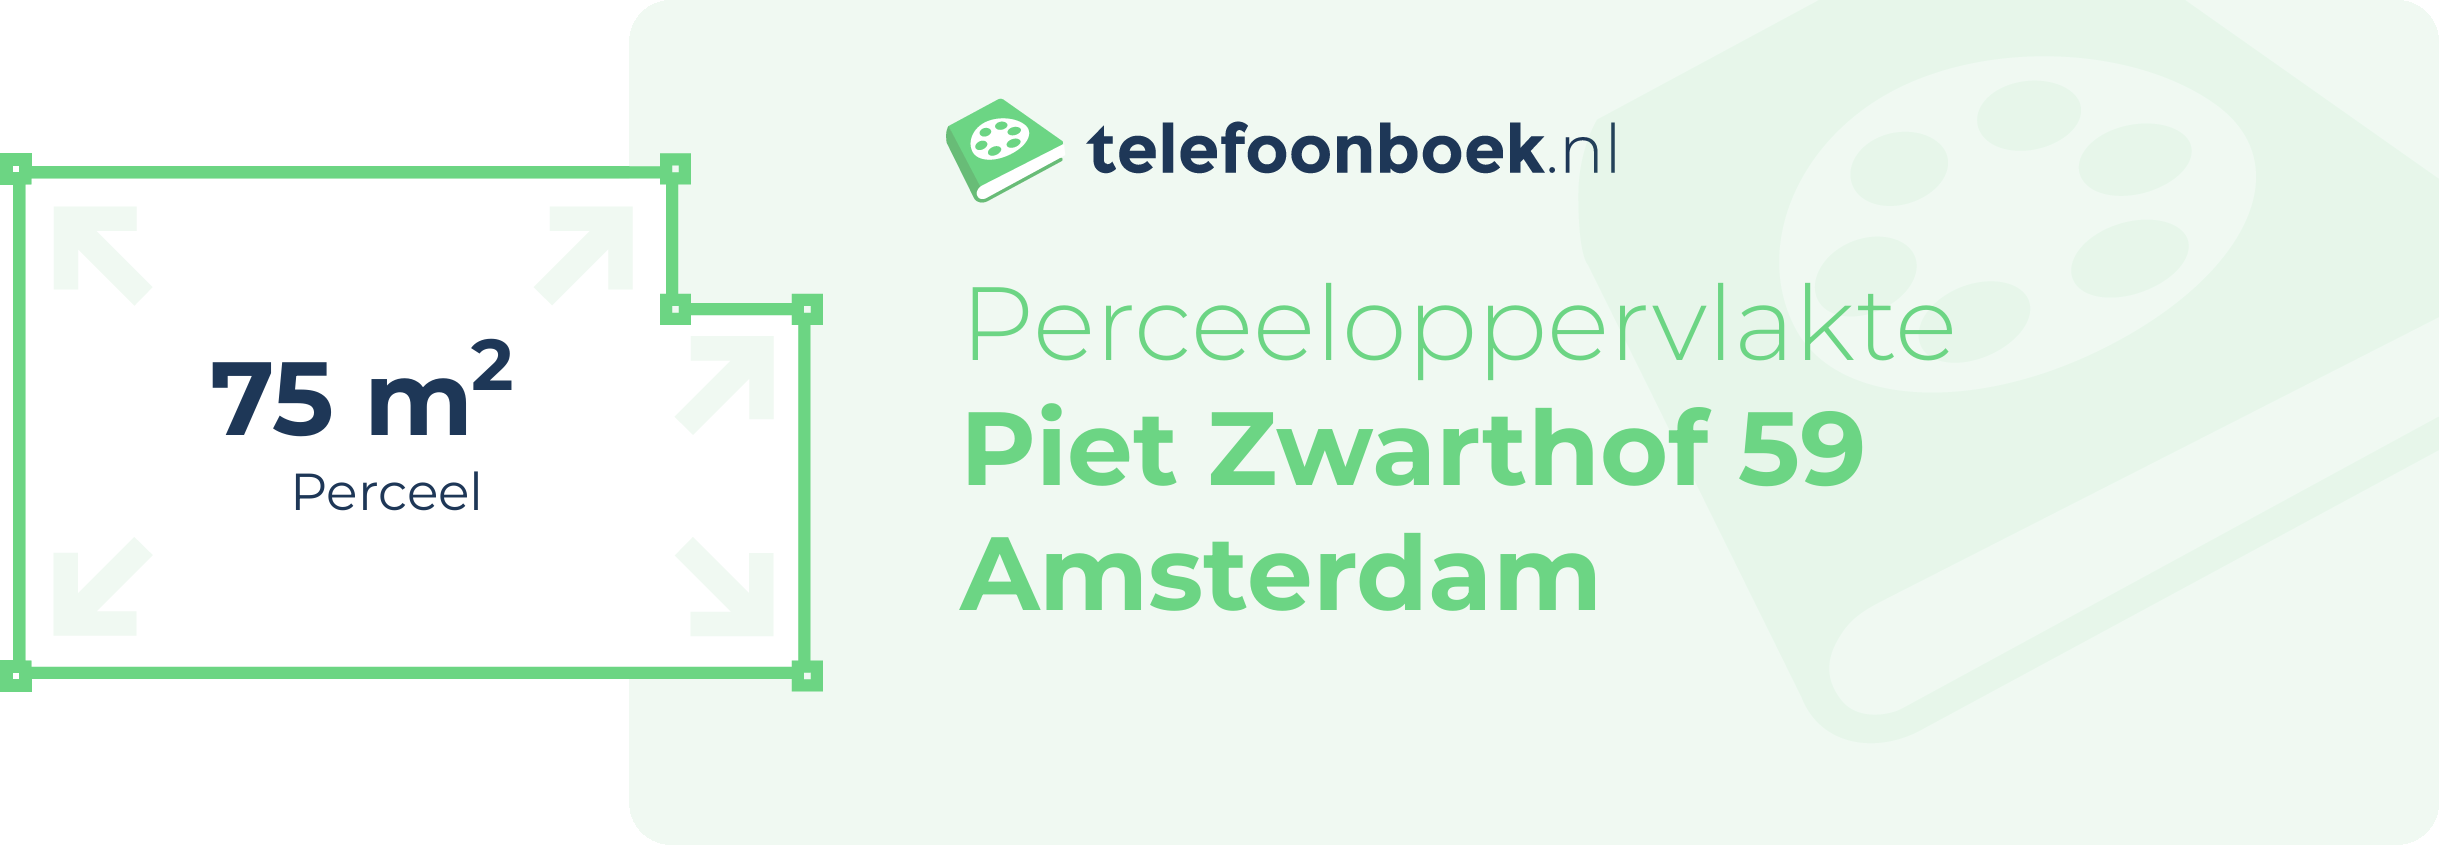 Perceeloppervlakte Piet Zwarthof 59 Amsterdam